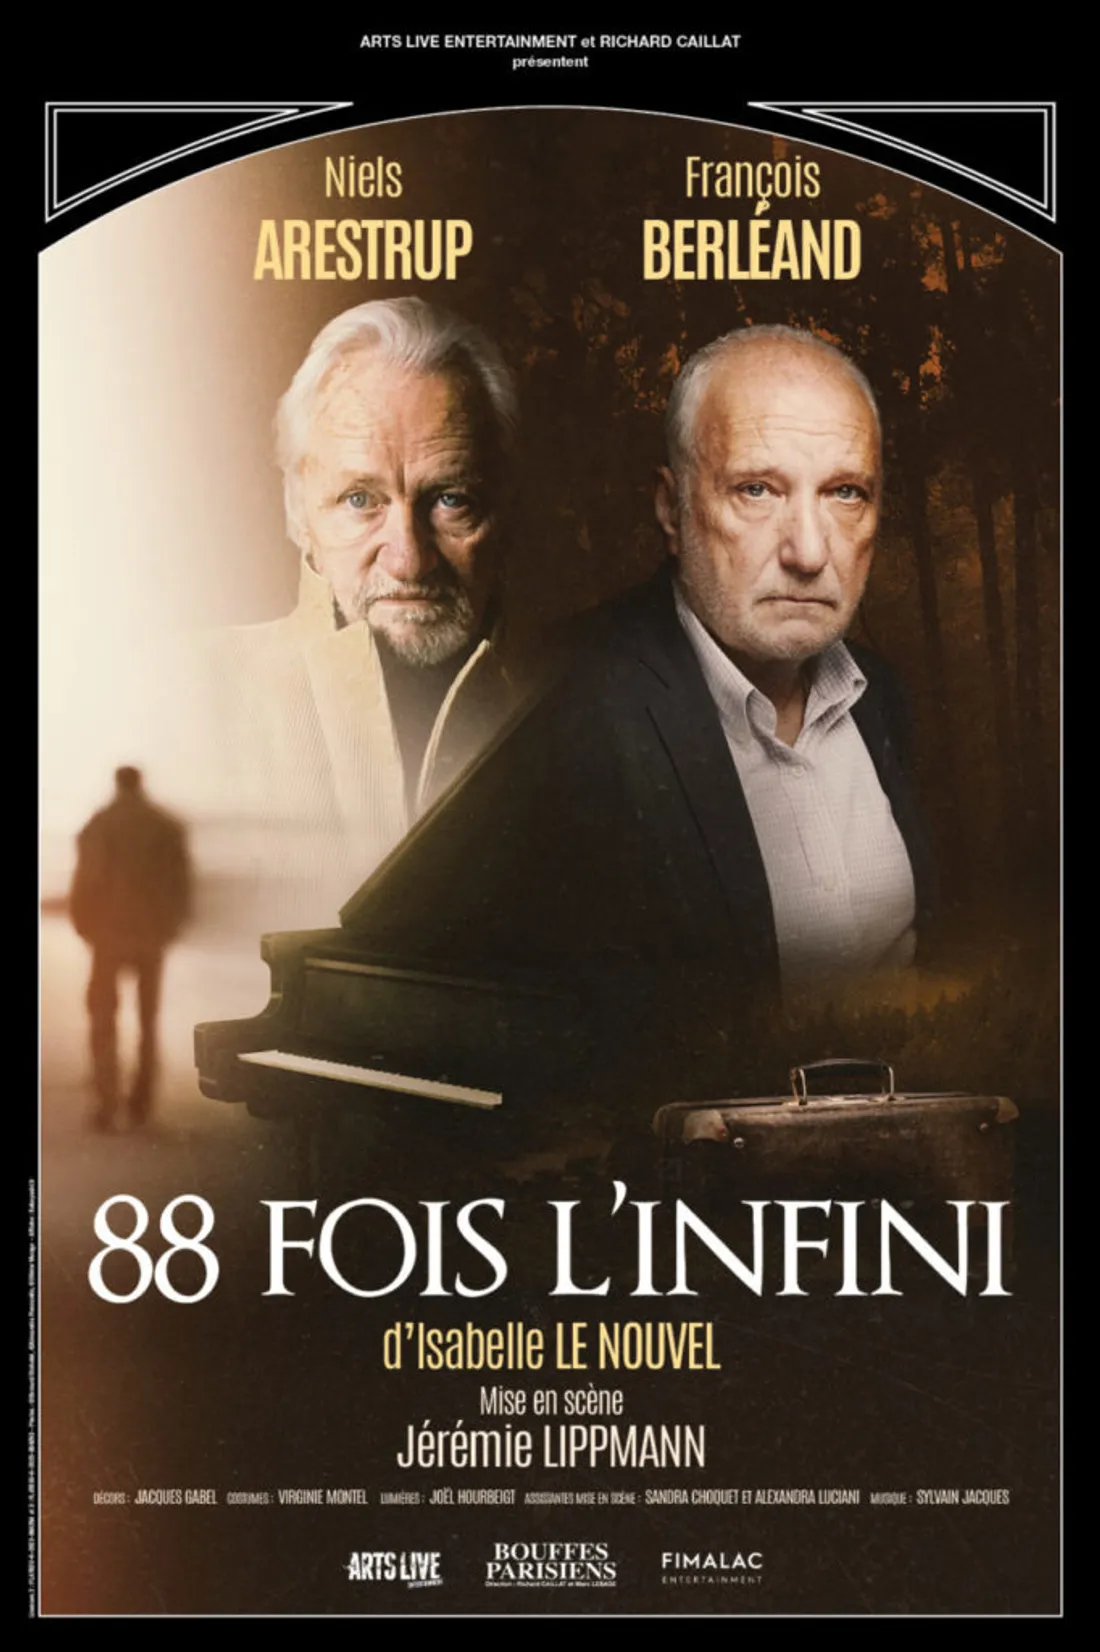  88 Fois L'infini - soirée théâtre à l'opéra de St-Etienne !